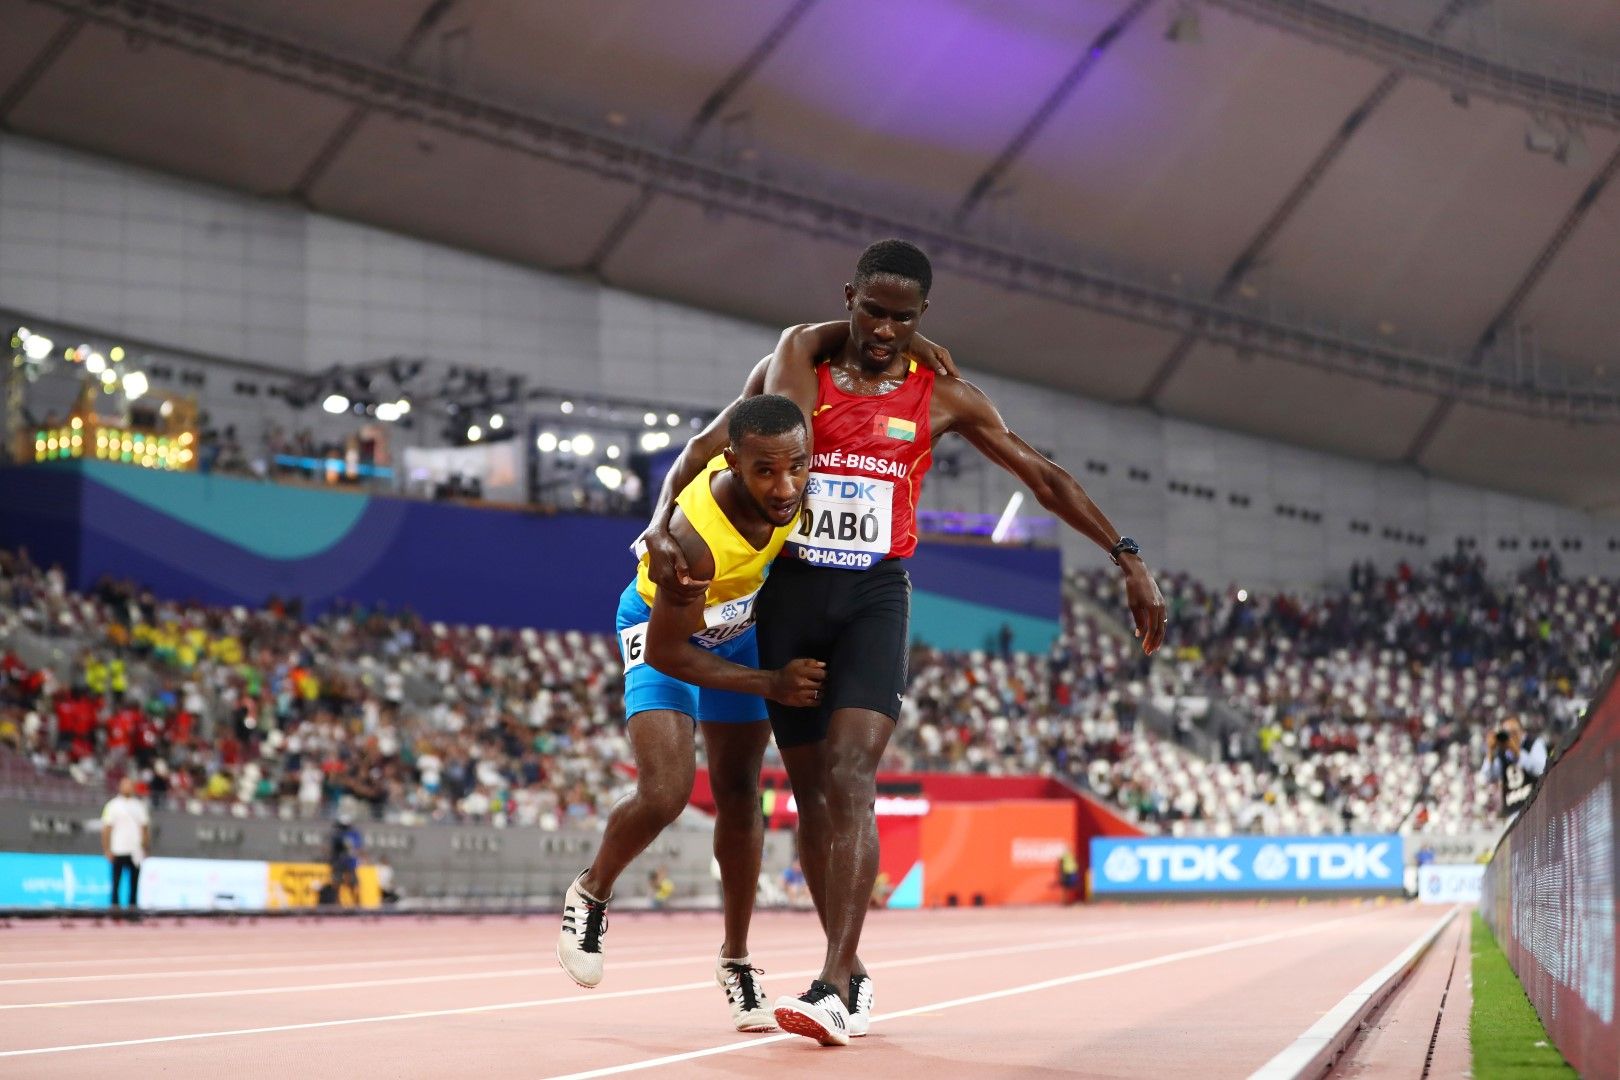 Световно първенство по лека атлетика, Доха. Браима Дабо от Гвинея Бисау помага на Джонатан Бъзби от Аруба да финишира по време на бягането на 5000 м. Огромните жеги и влажност съсипаха състезателите.